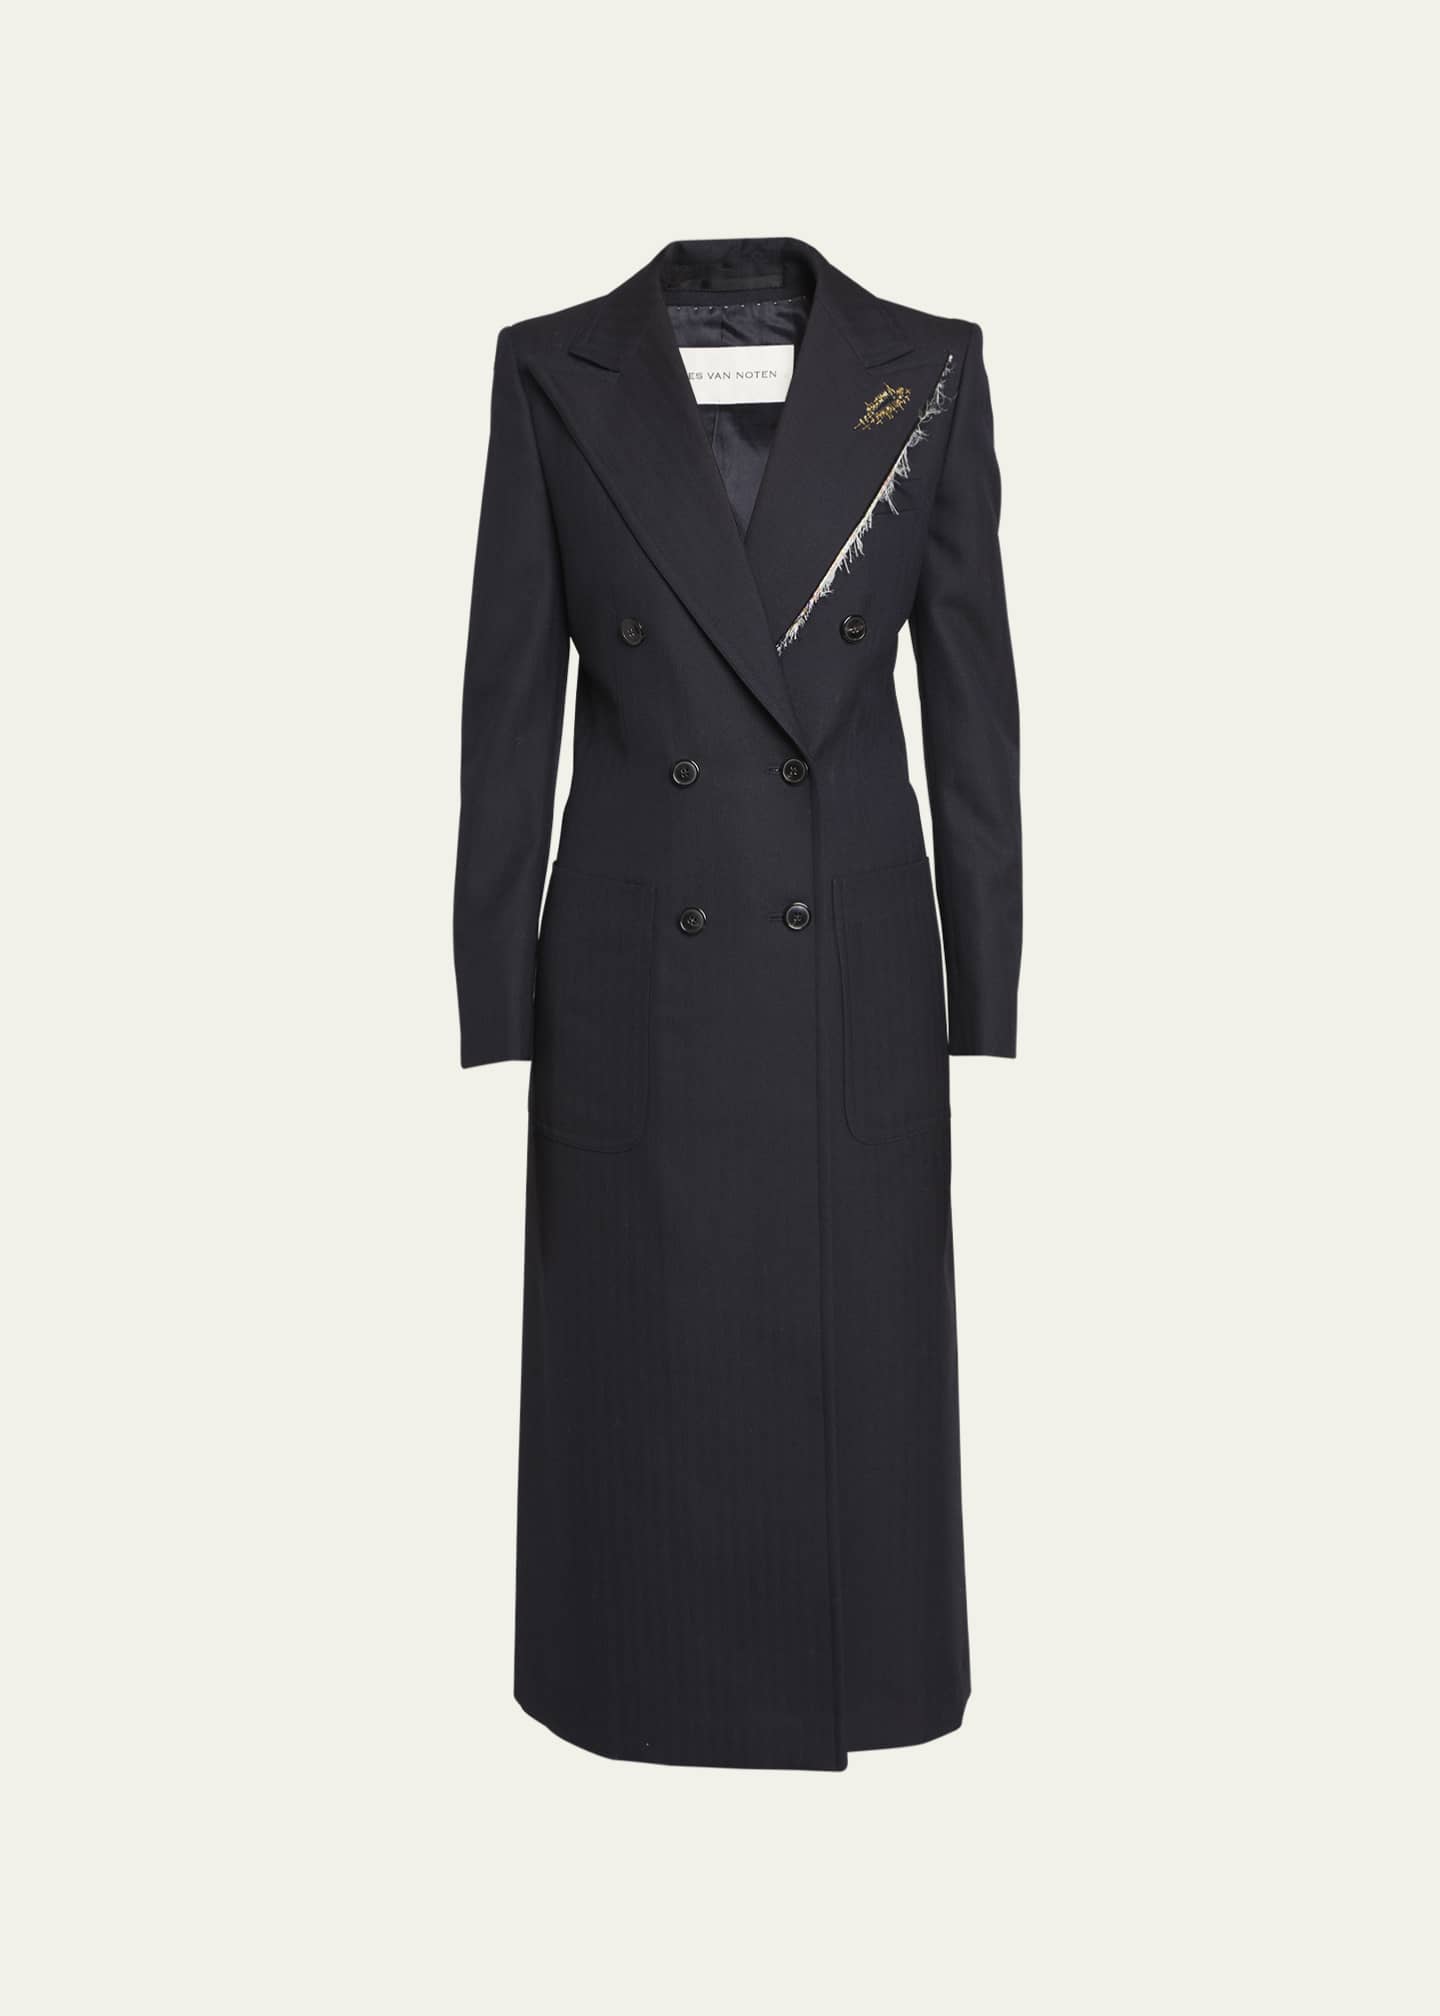 Dries Van Noten Rylee Long Embellished Wool Overcoat - Bergdorf